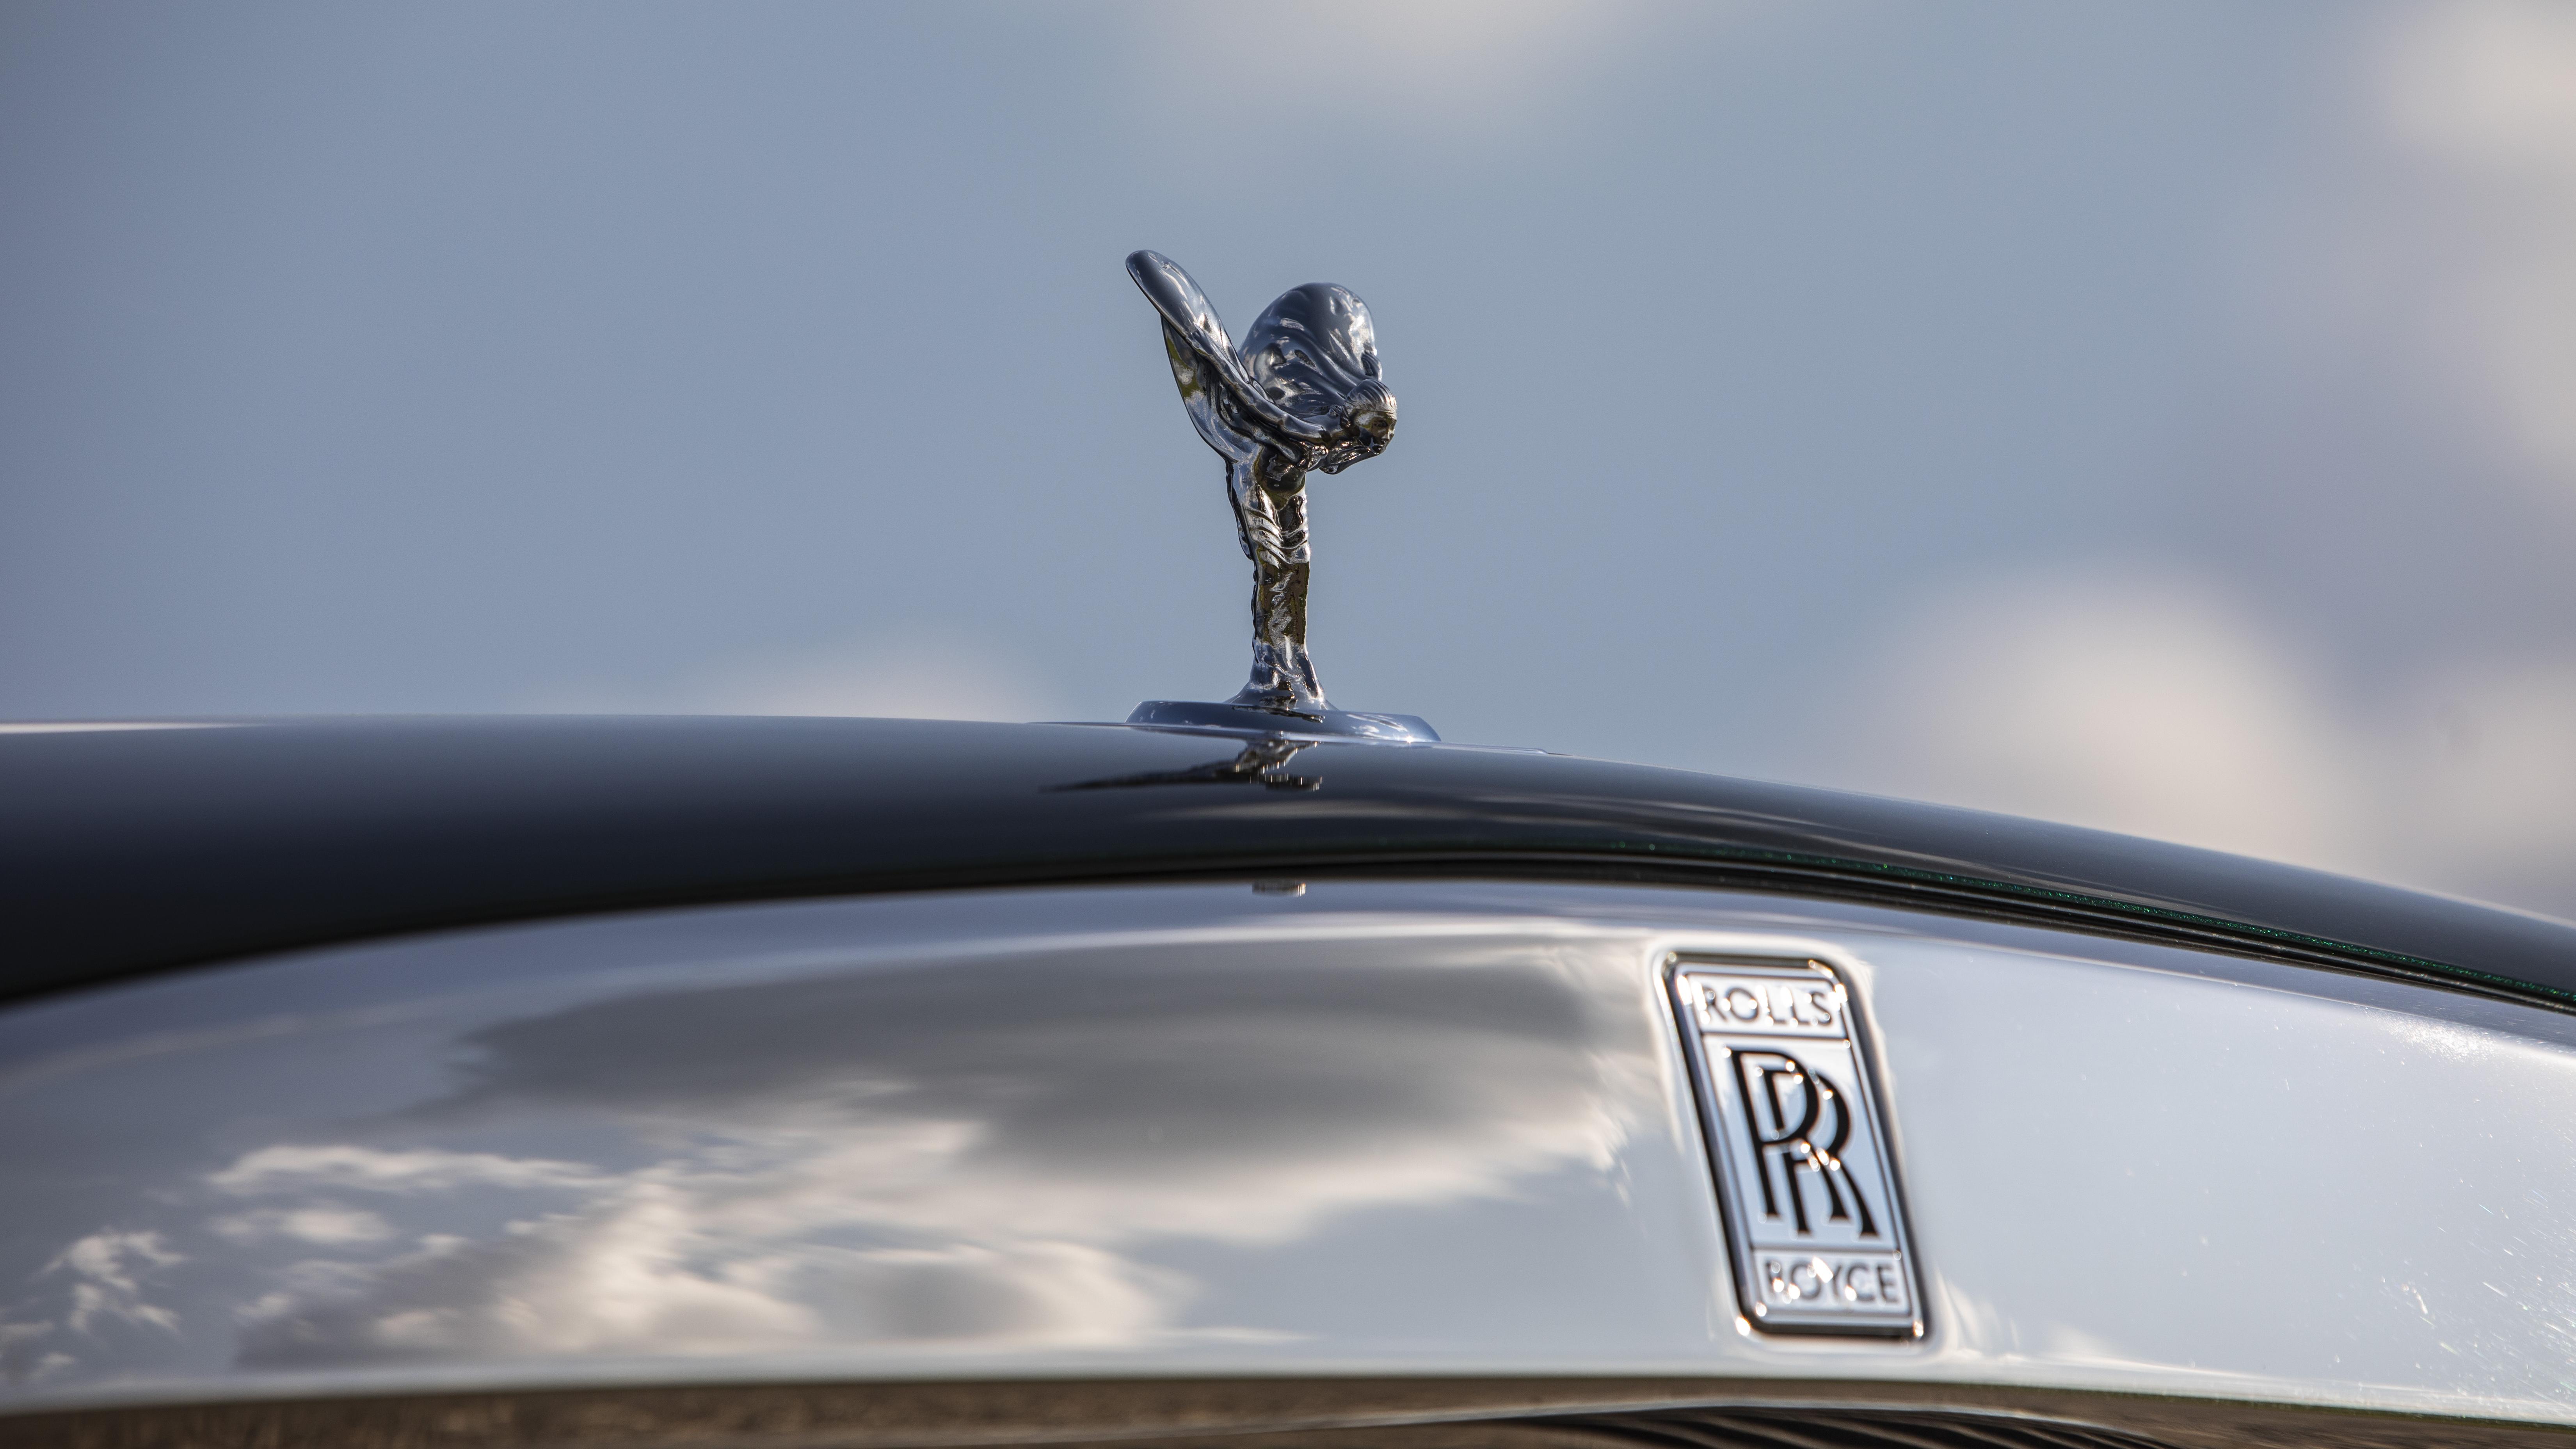 UE gasi światło w znaczku Rolls-Royce'a – koniec z podświetlaniem figurki